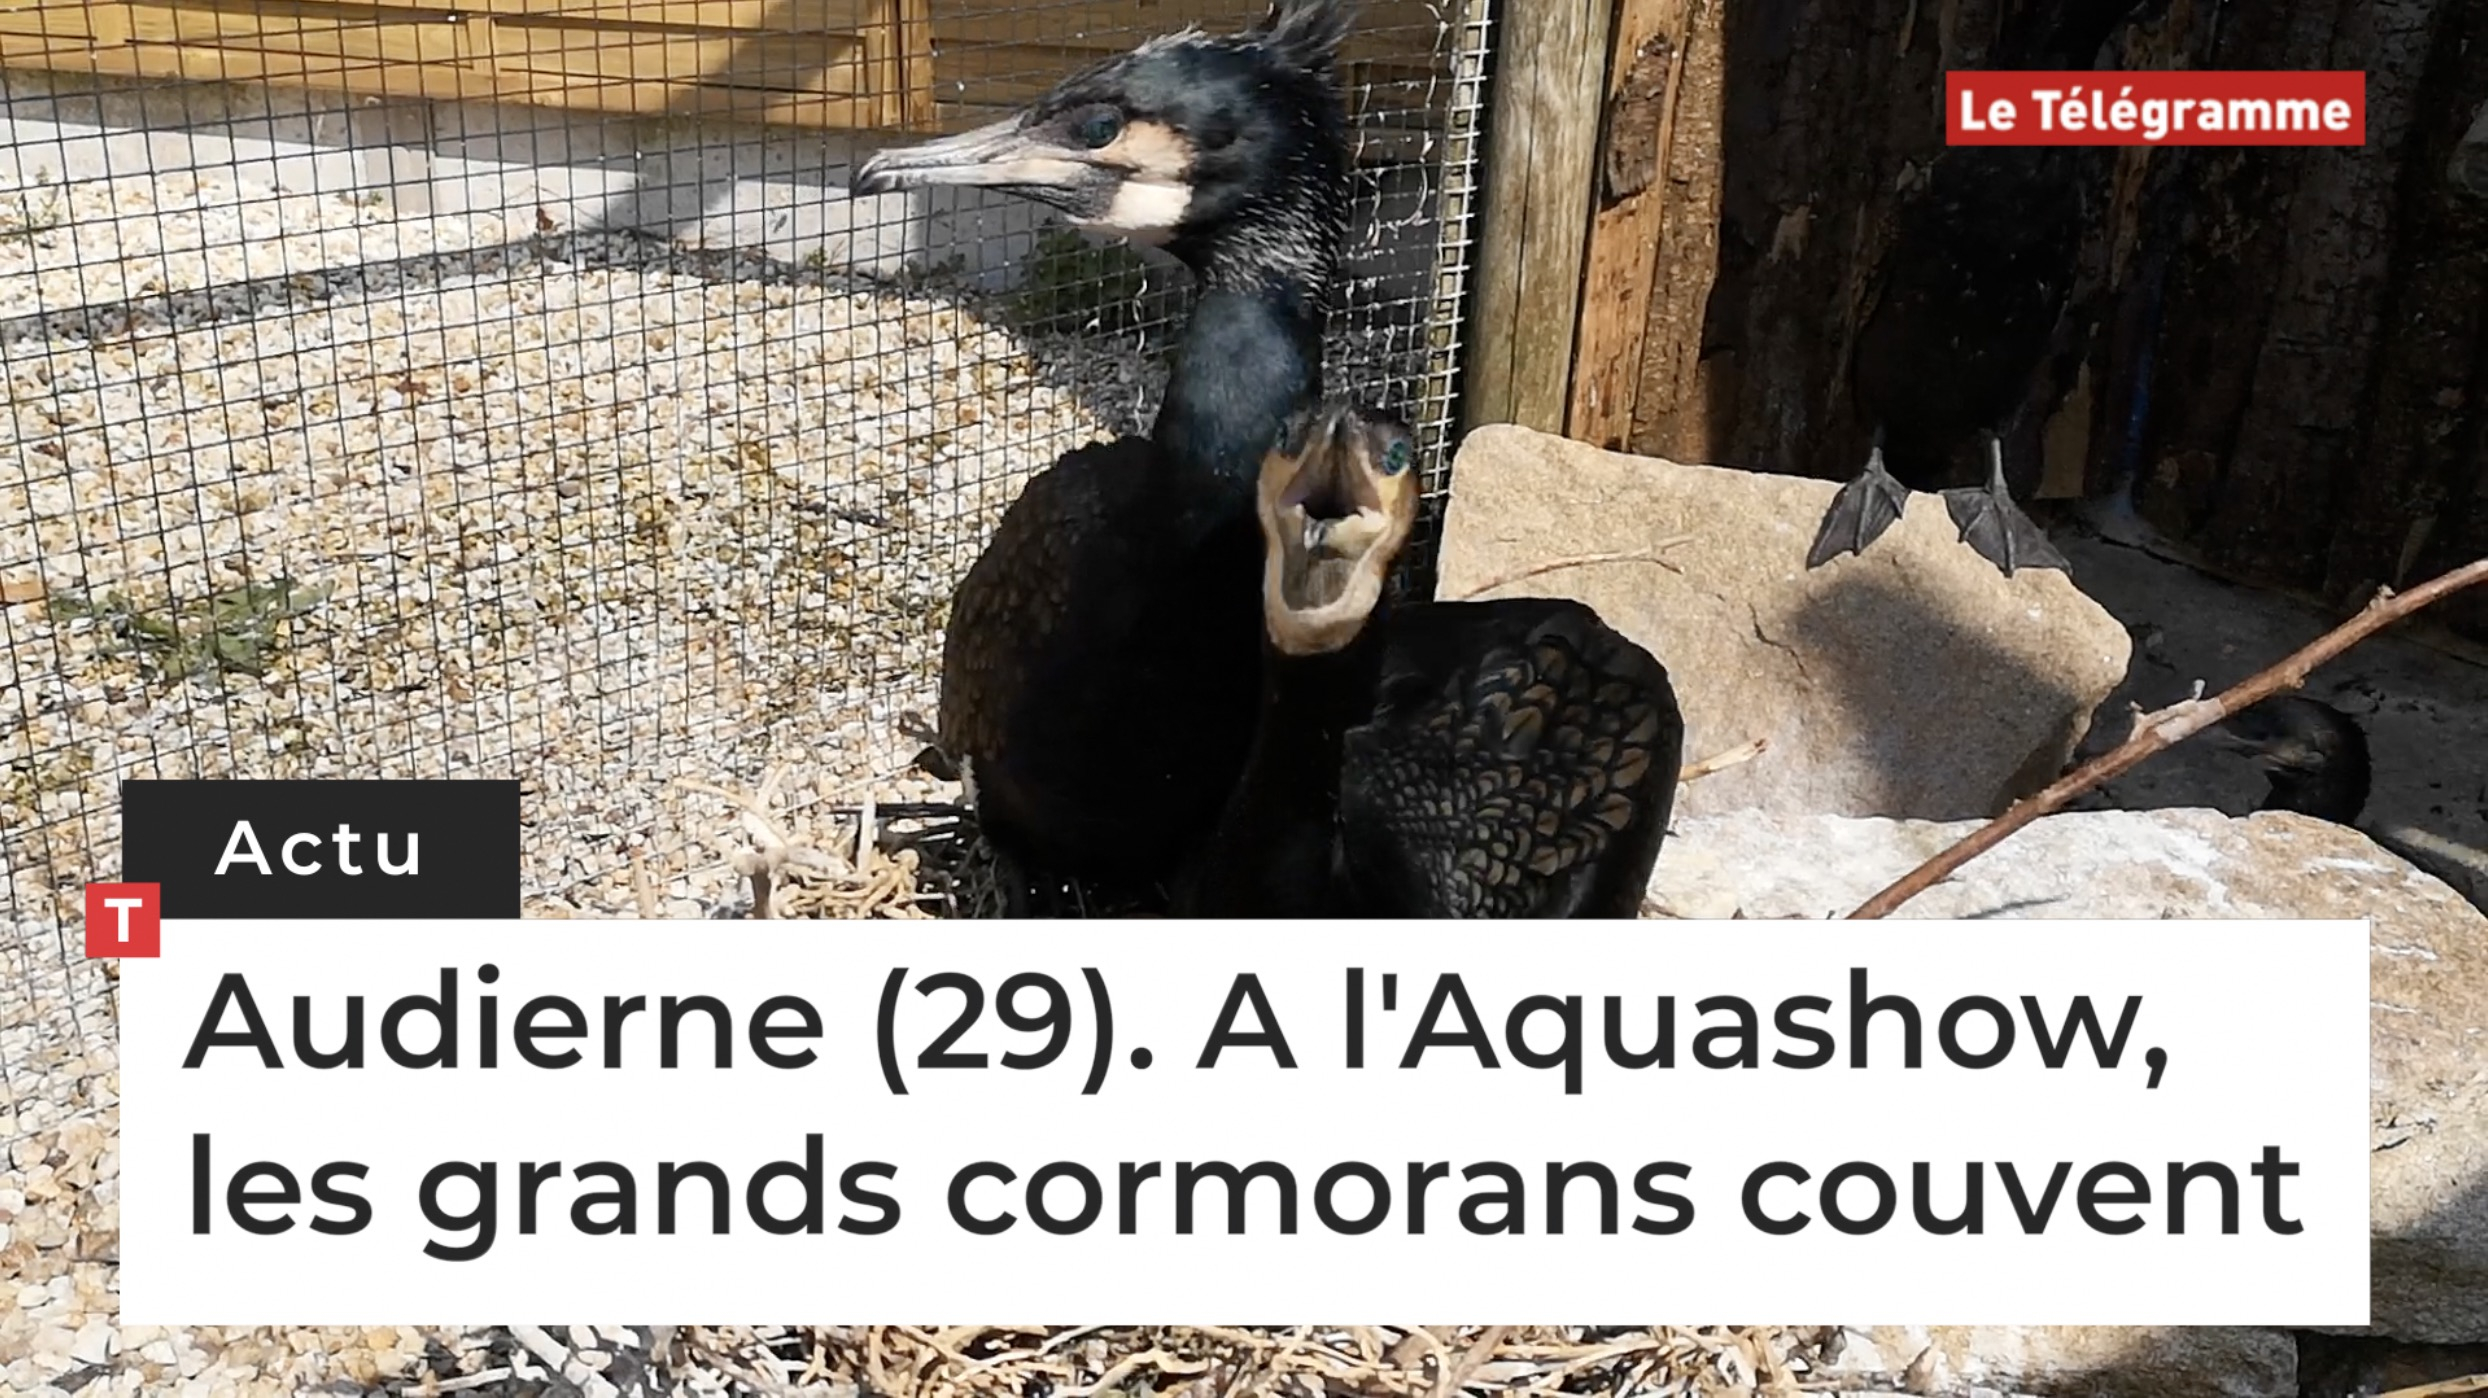 Audierne (29). A l'Aquashow, les grands cormorans couvent (Le Télégramme)